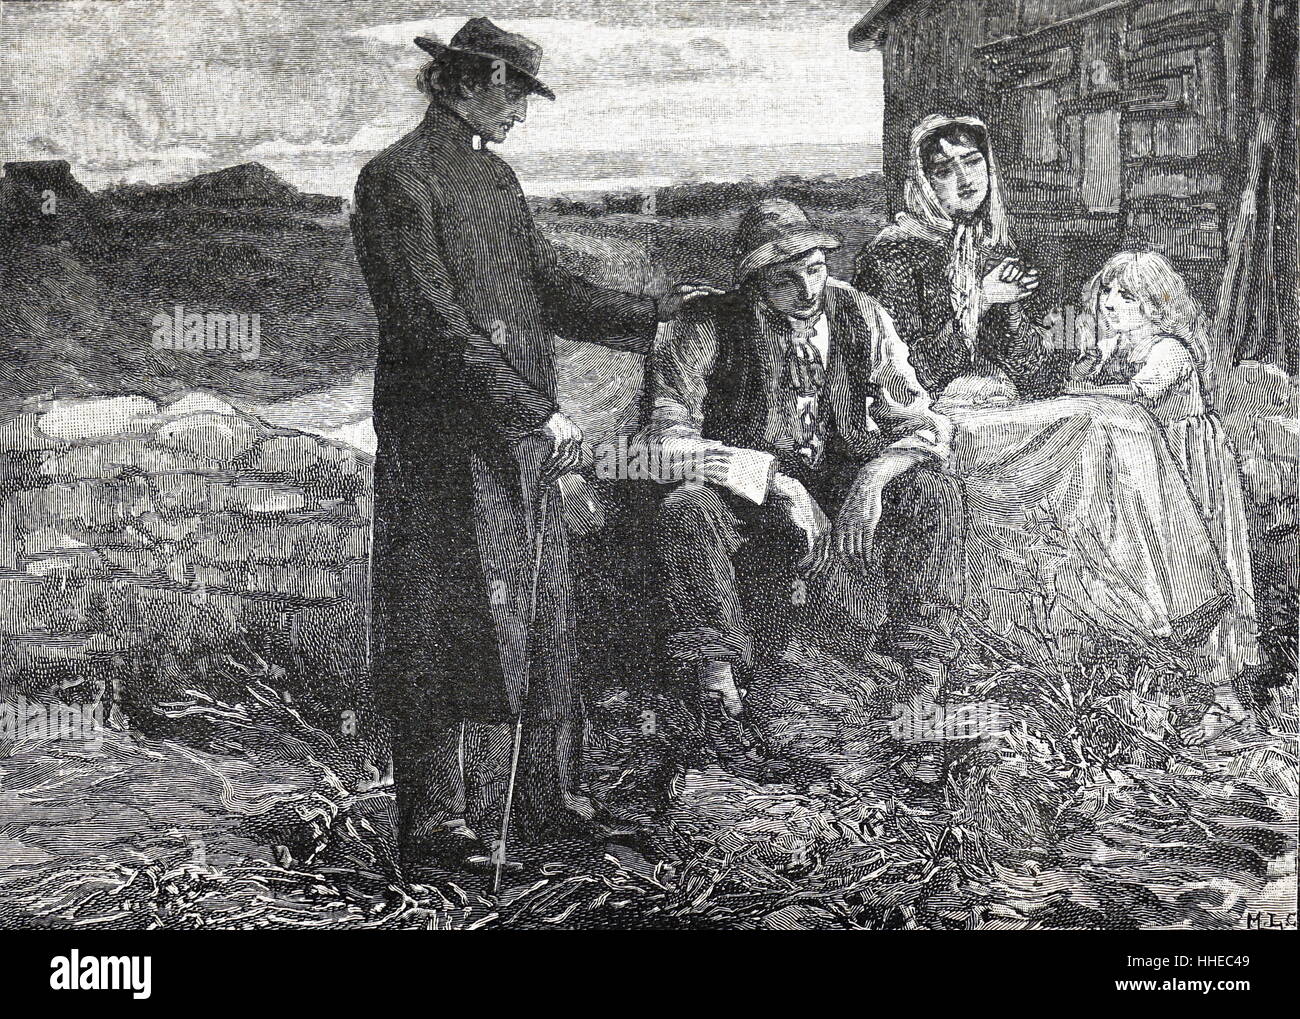 Vater Mathew (Theobald Mathew 1790-1856) Beruhigend eine hungernde Familie während der irischen Hungersnot der 1840er. Vater Mathew unermüdlich gearbeitet, um das Leiden in dieser Zeit zu entlasten. Stockfoto